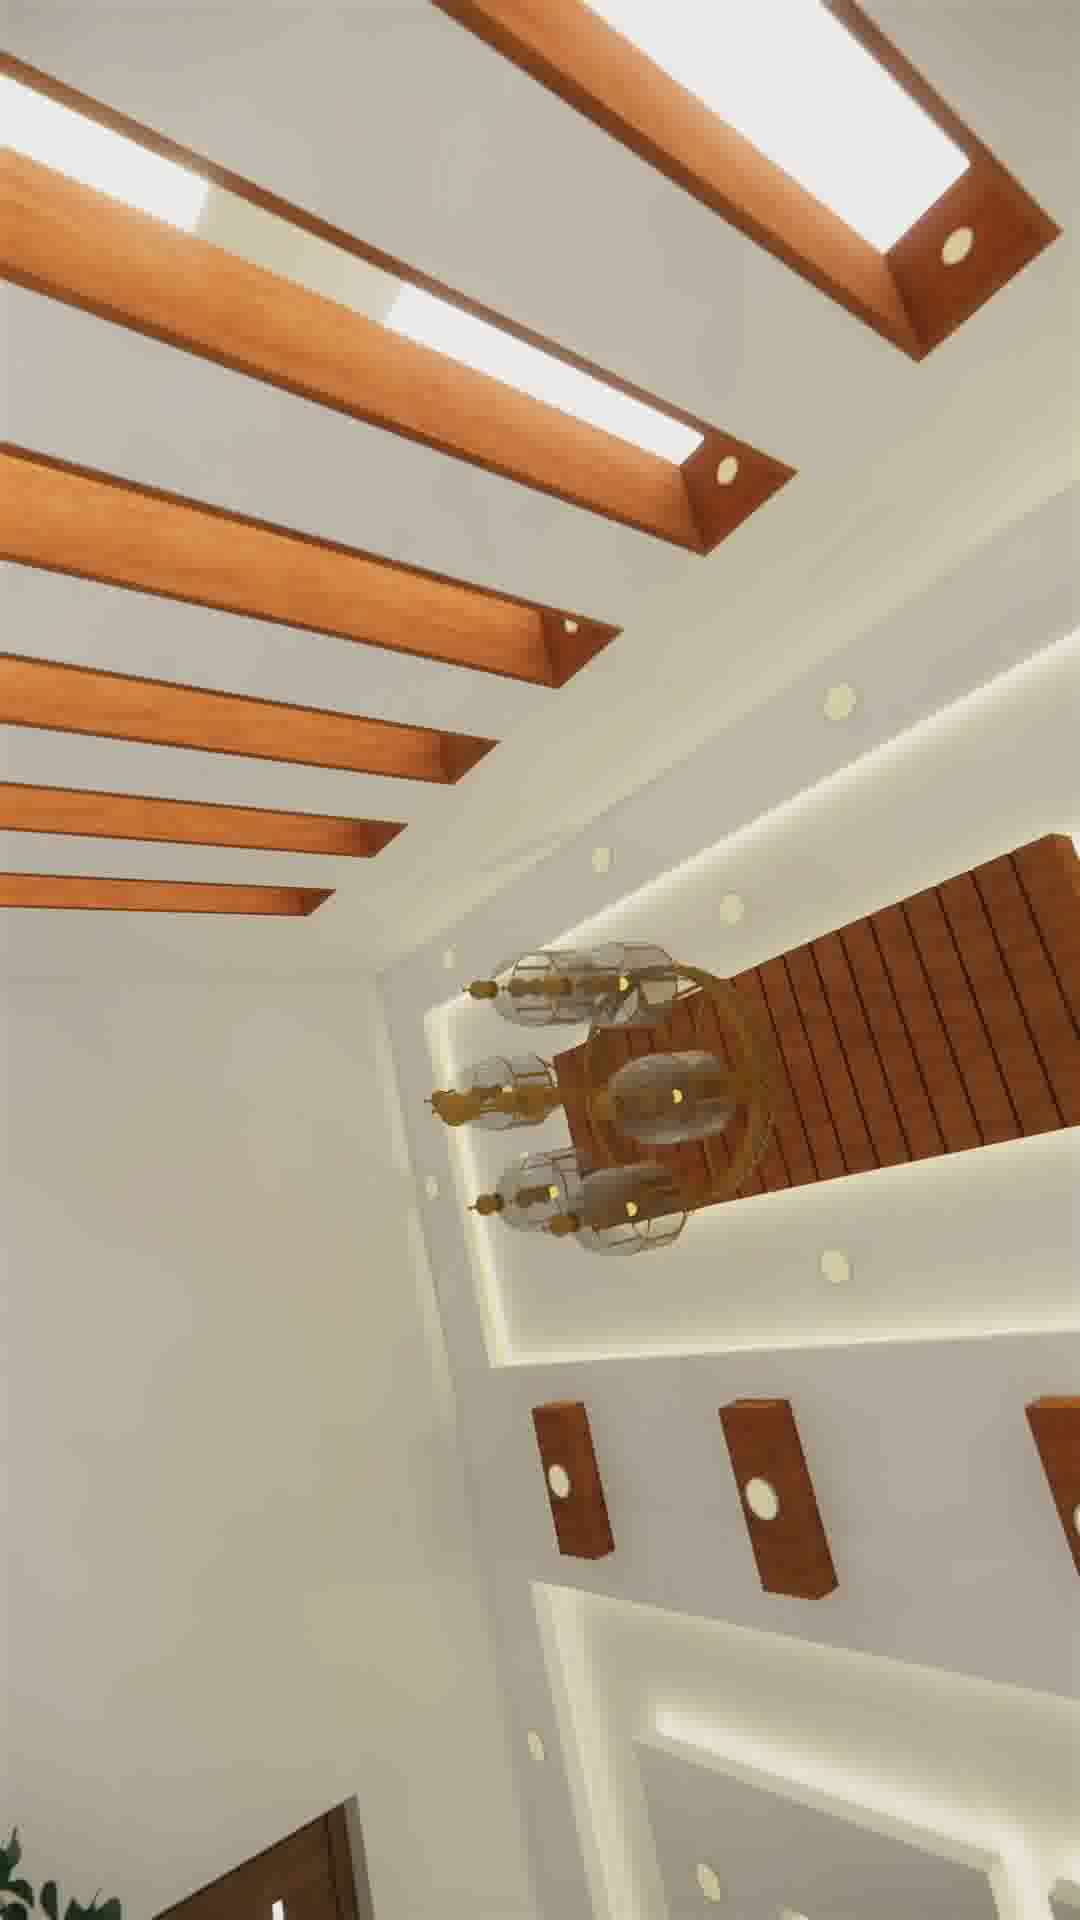 #LivingroomDesigns #ceiling #GypsumCeiling